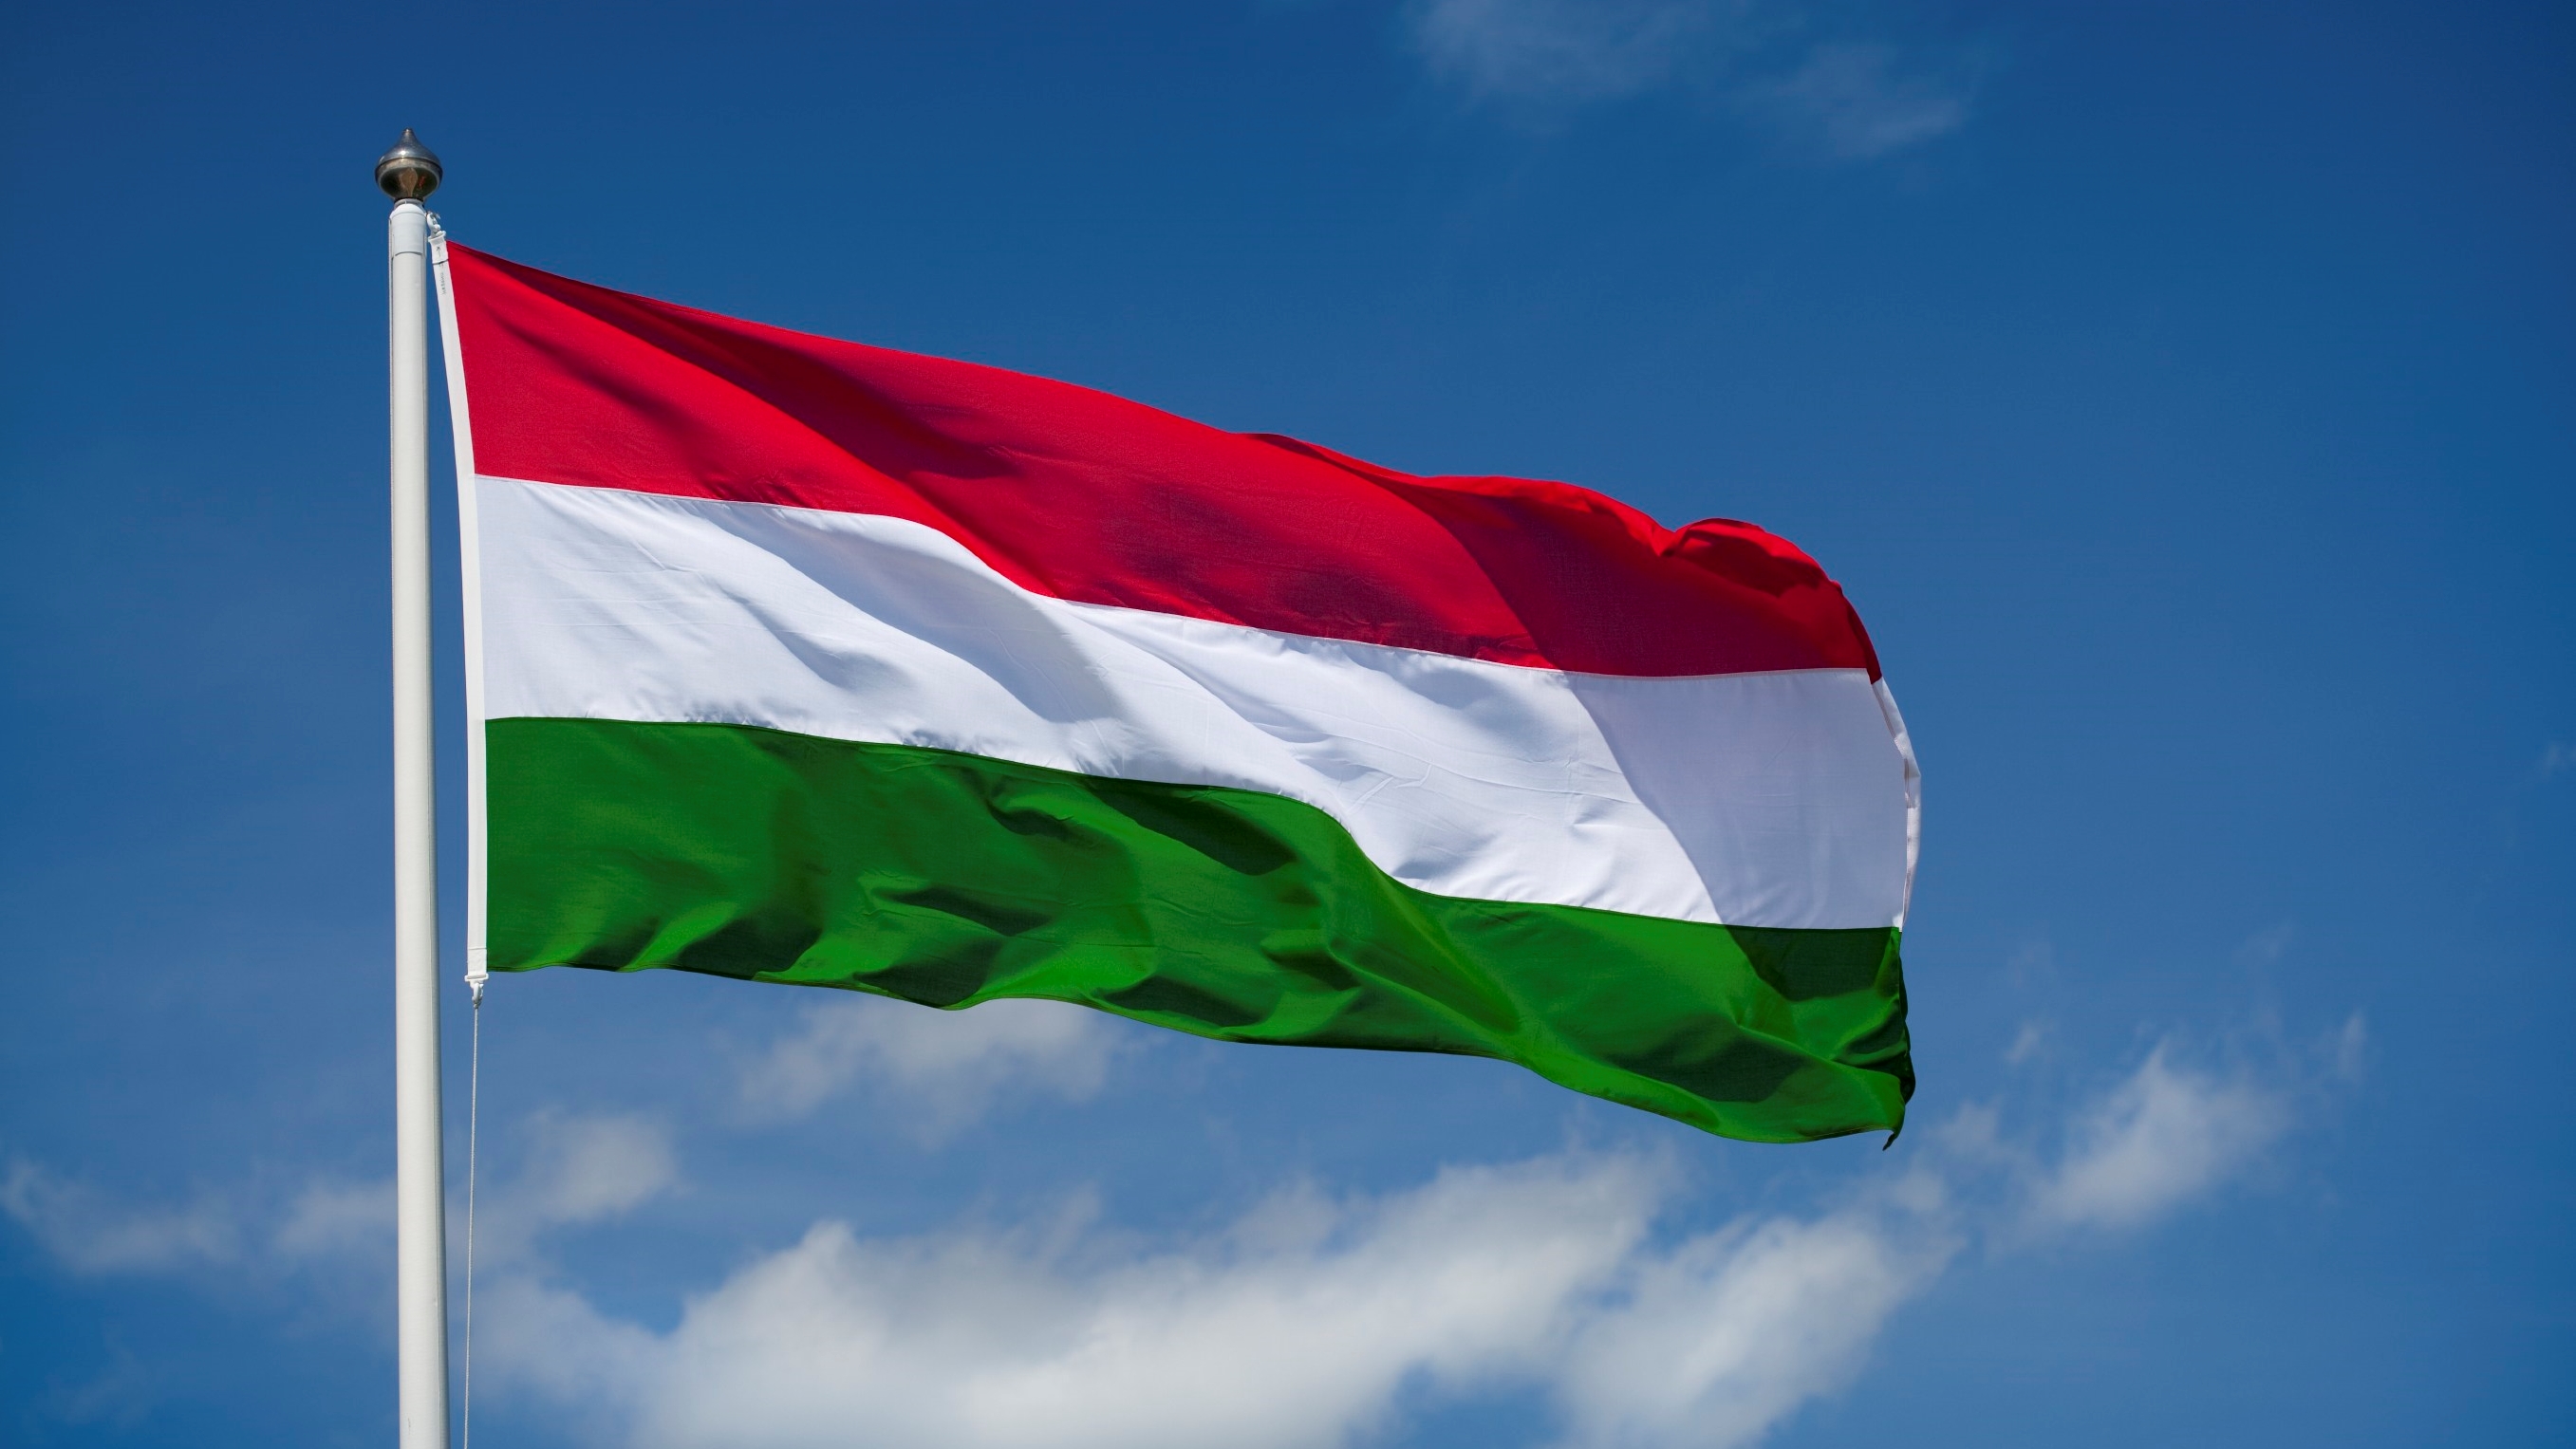 Macaristan’a/Macaristan’dan Yapılan Seferlerde İthalatçı/İhracatçı Firmalara BiReg Kaydı Zorunluluğu Getirildi